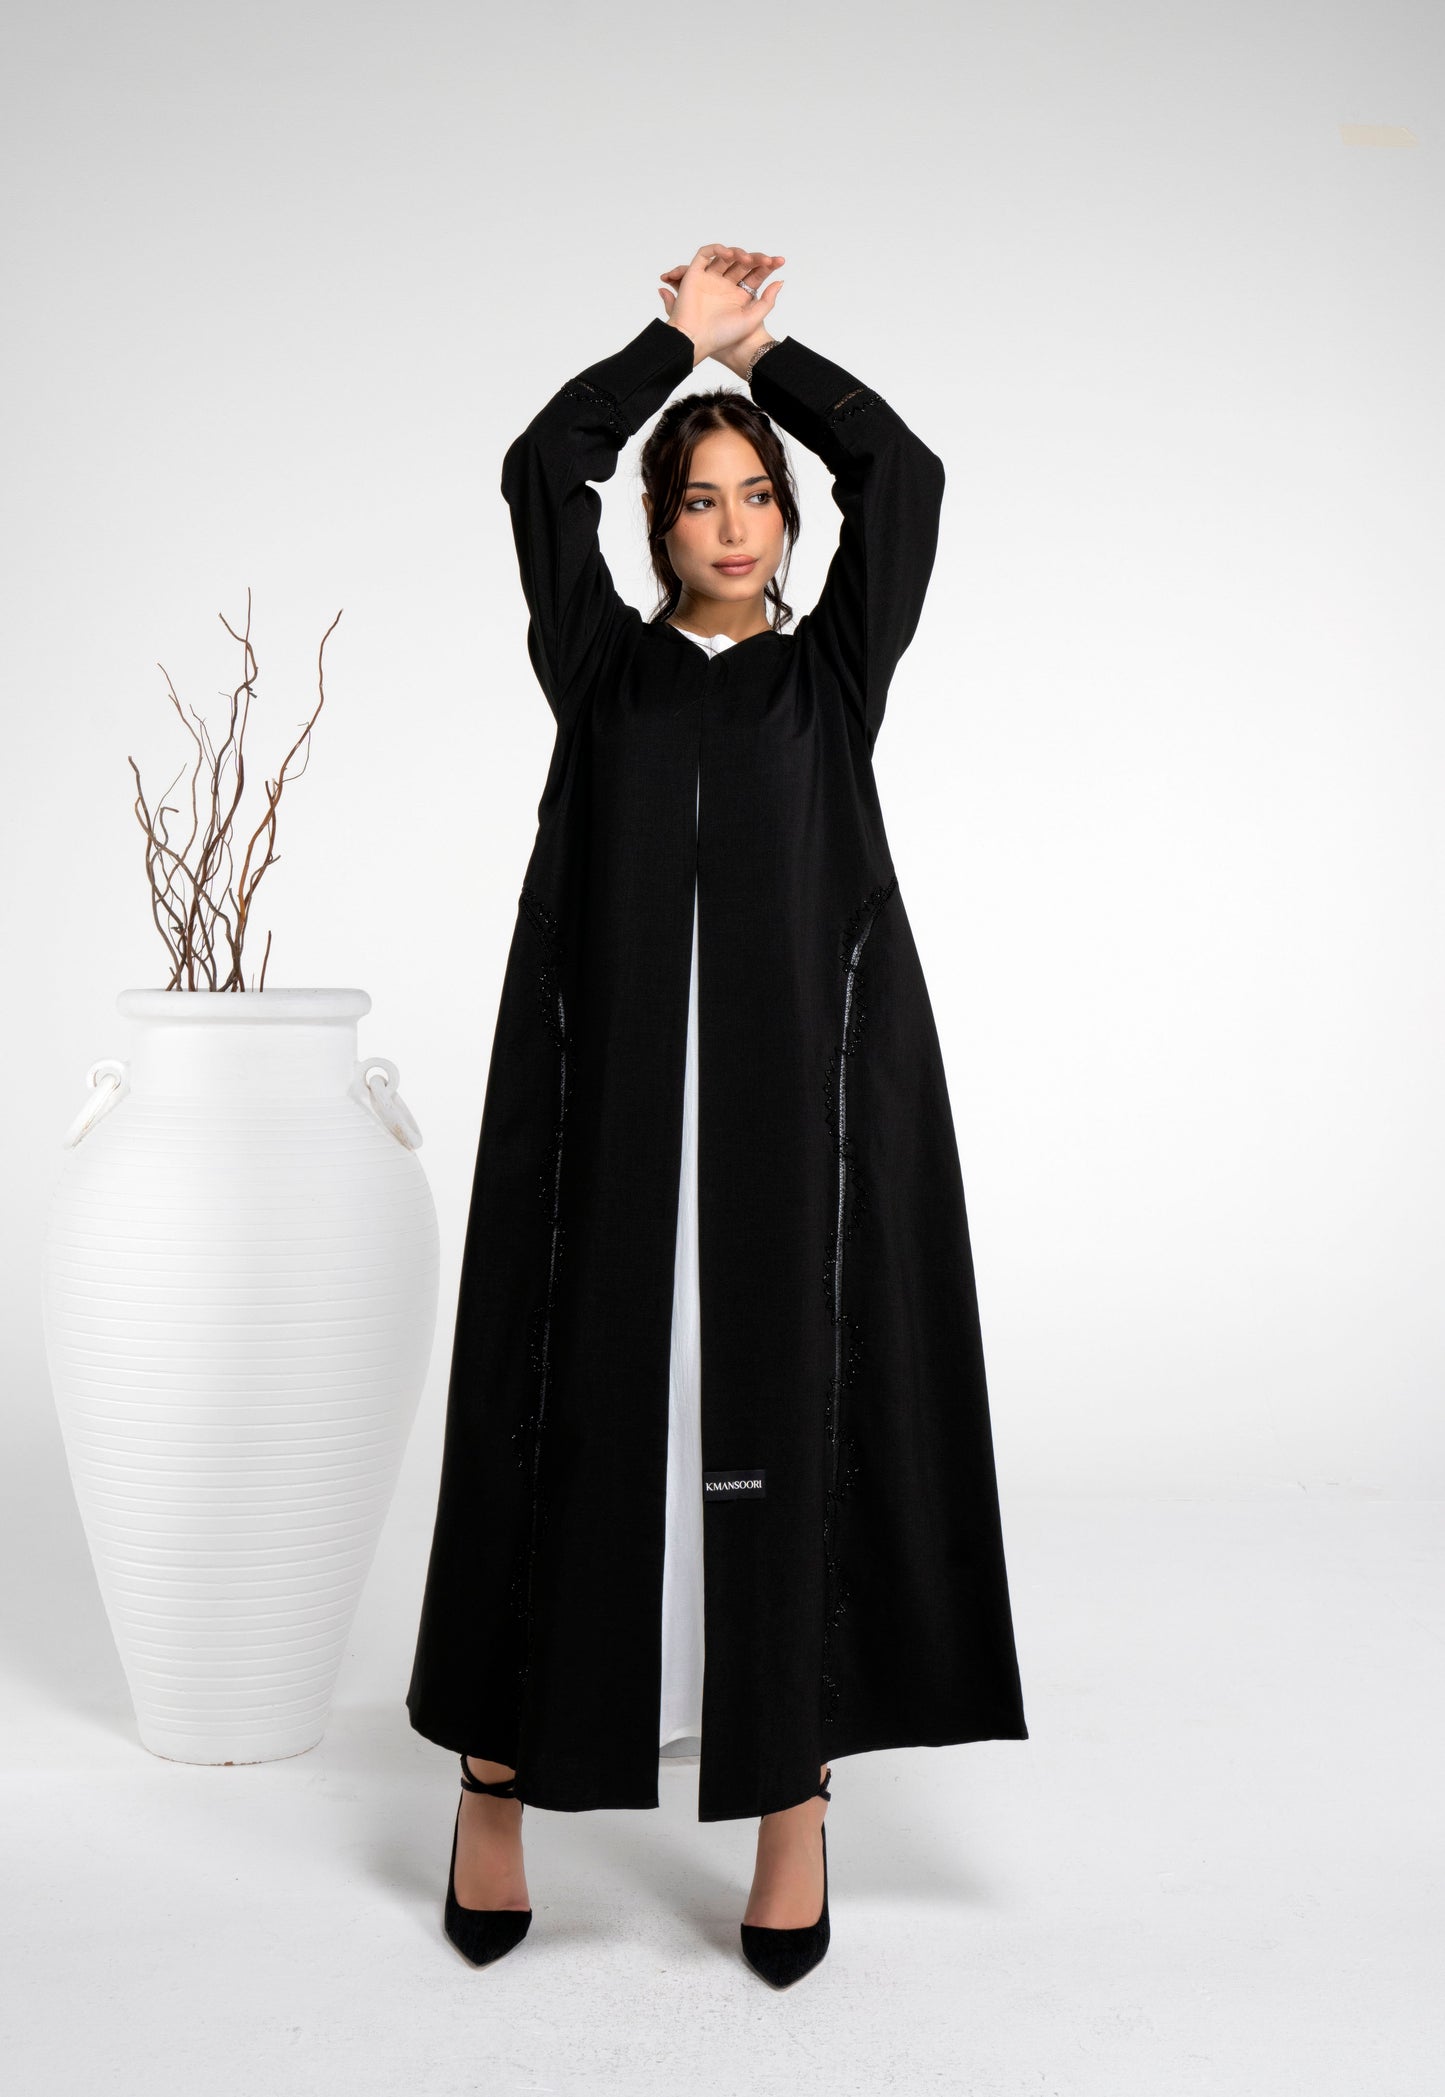 Black abaya with lace pattern